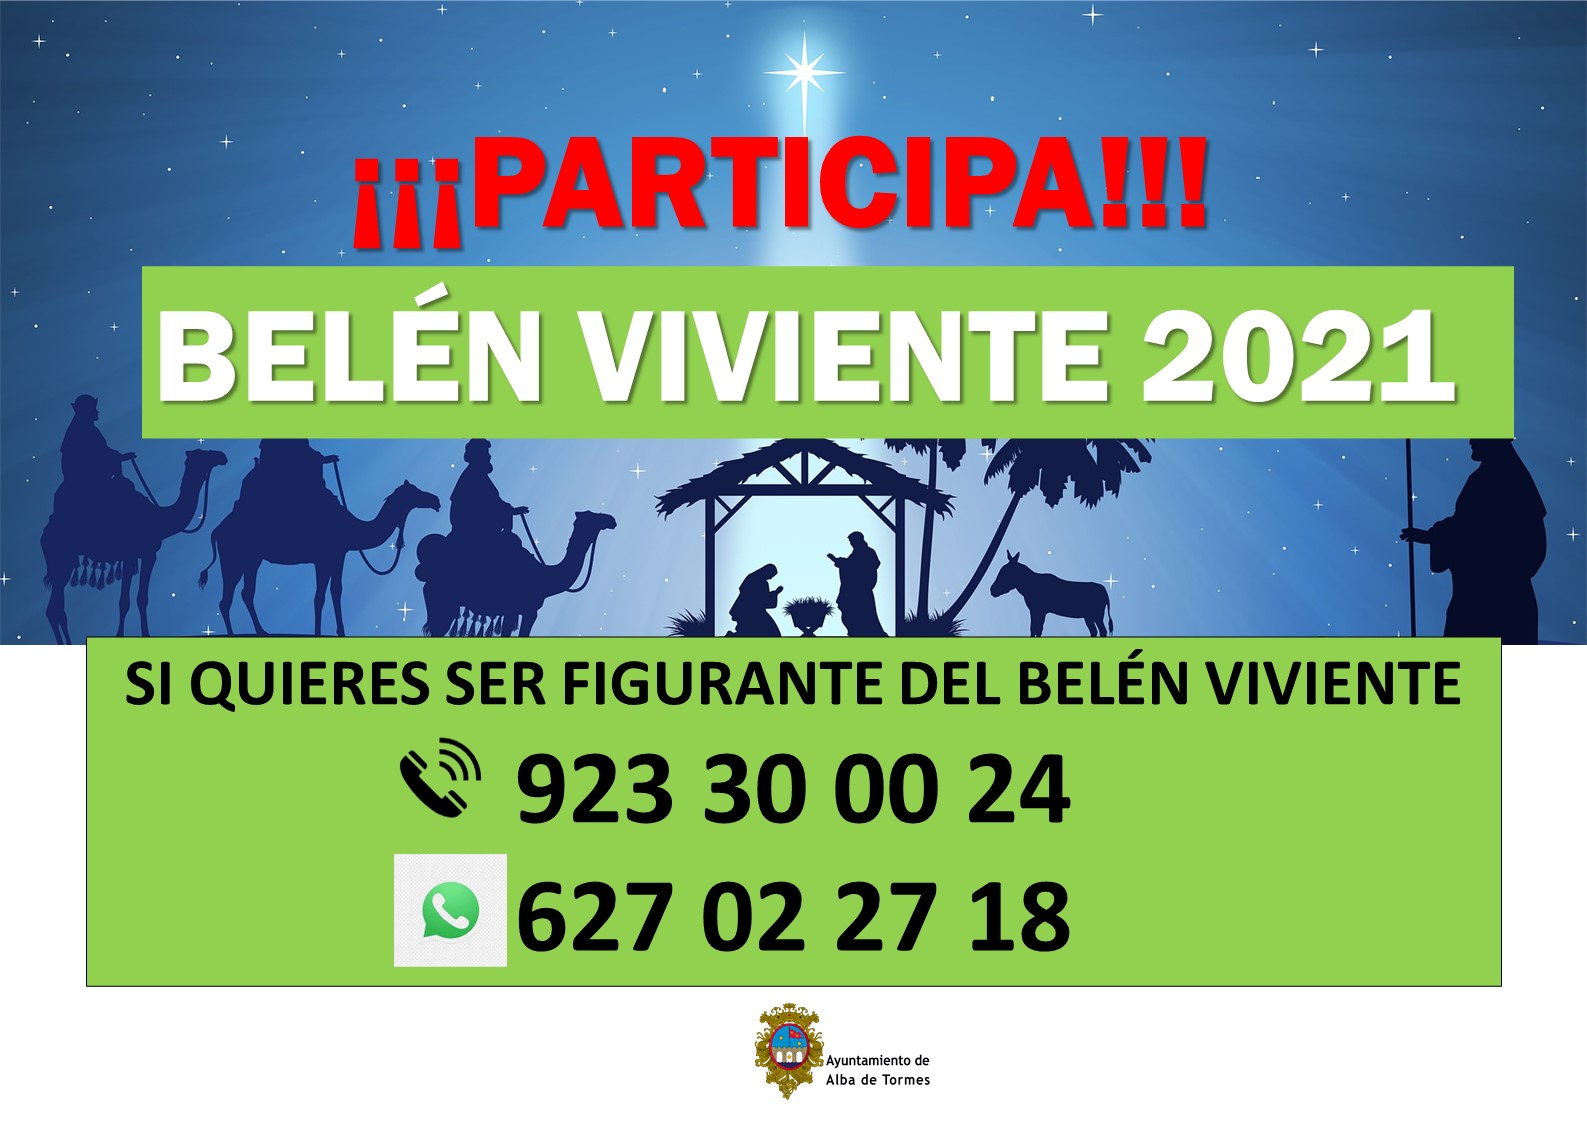 El Ayuntamiento de Alba de Tormes fija la celebración del Belén Viviente el 26 de diciembre y solicita la colaboración ciudadana